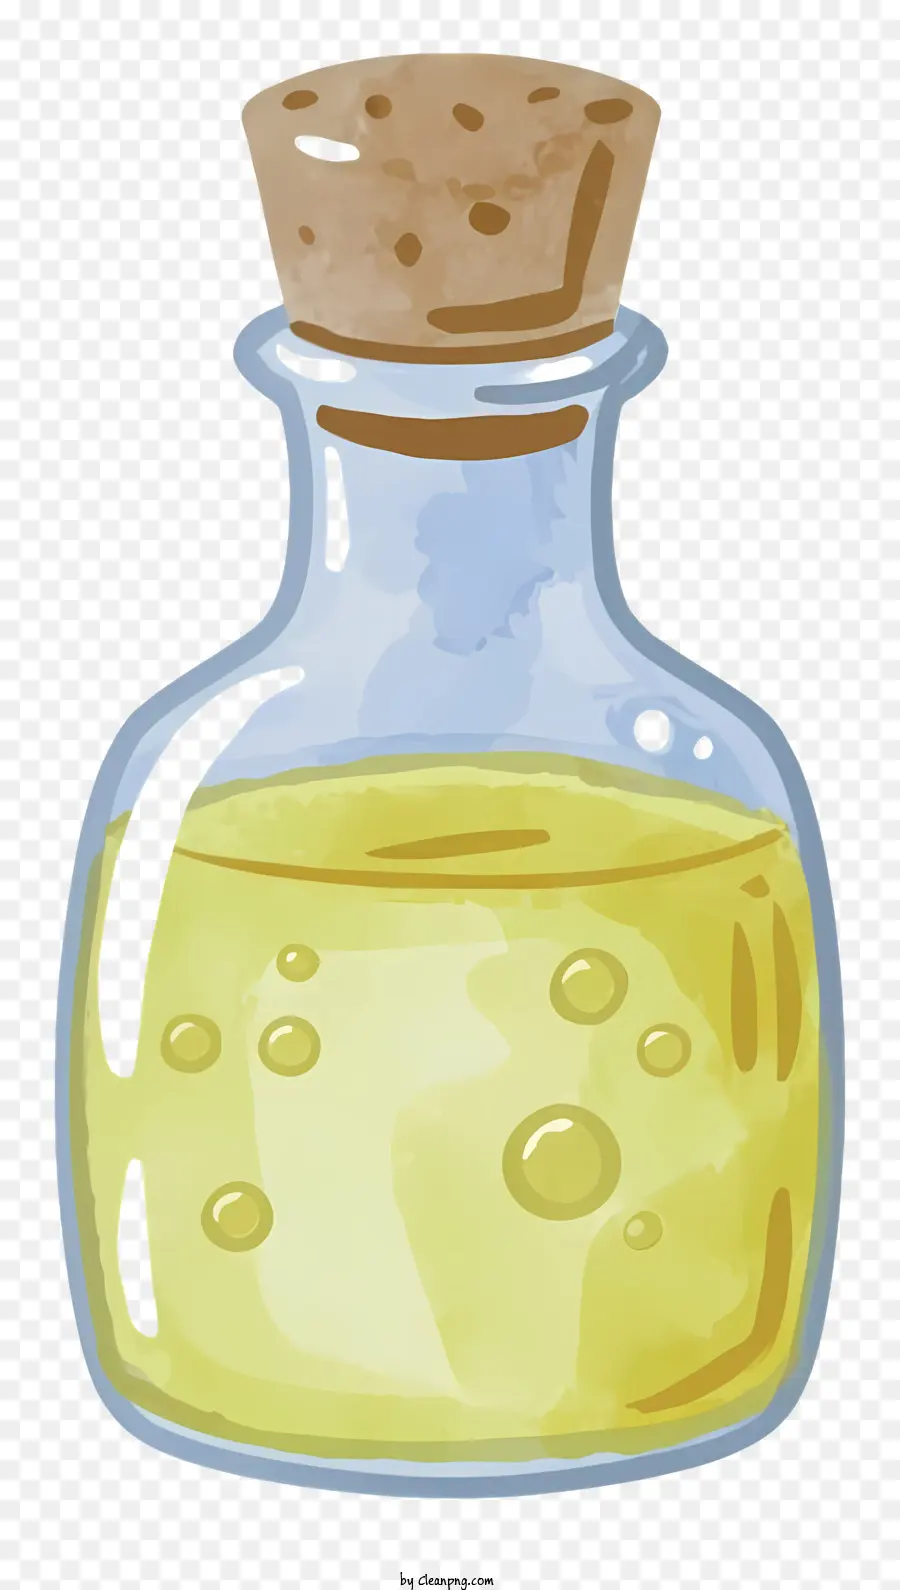 Cartoonglas Flasche Kork gelber flüssiger schwarzer Hintergrund - Glasflasche mit Kork mit gelbe Flüssigkeit auf schwarzem Hintergrund gefüllt